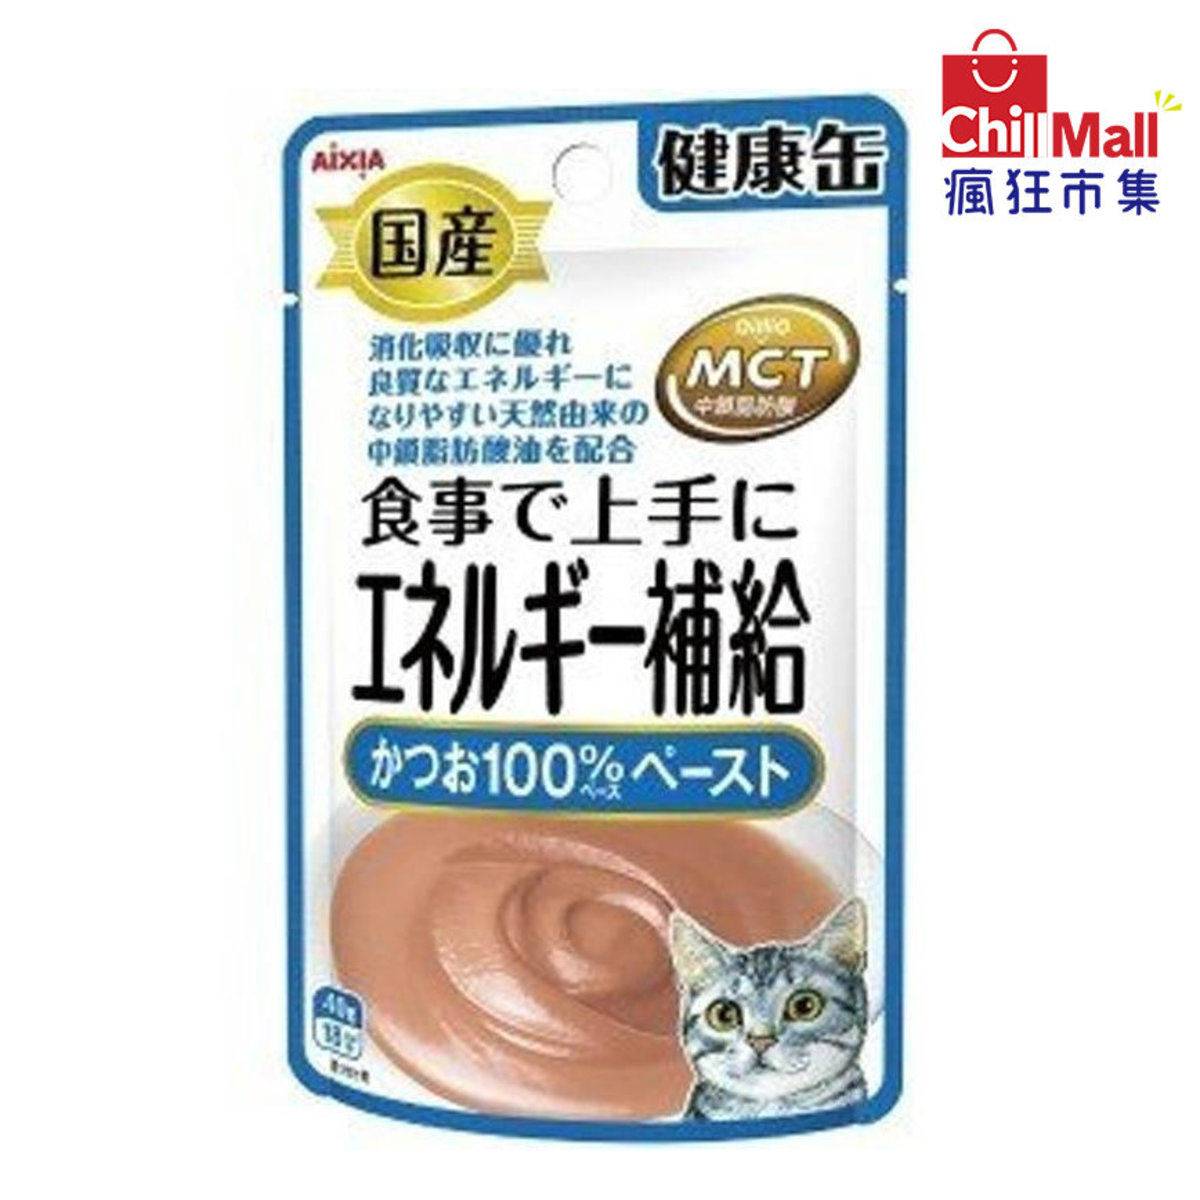 日本AIXIA愛喜雅 健康缶能量補給濕糧包 鰹魚味 40g (藍) 4715894